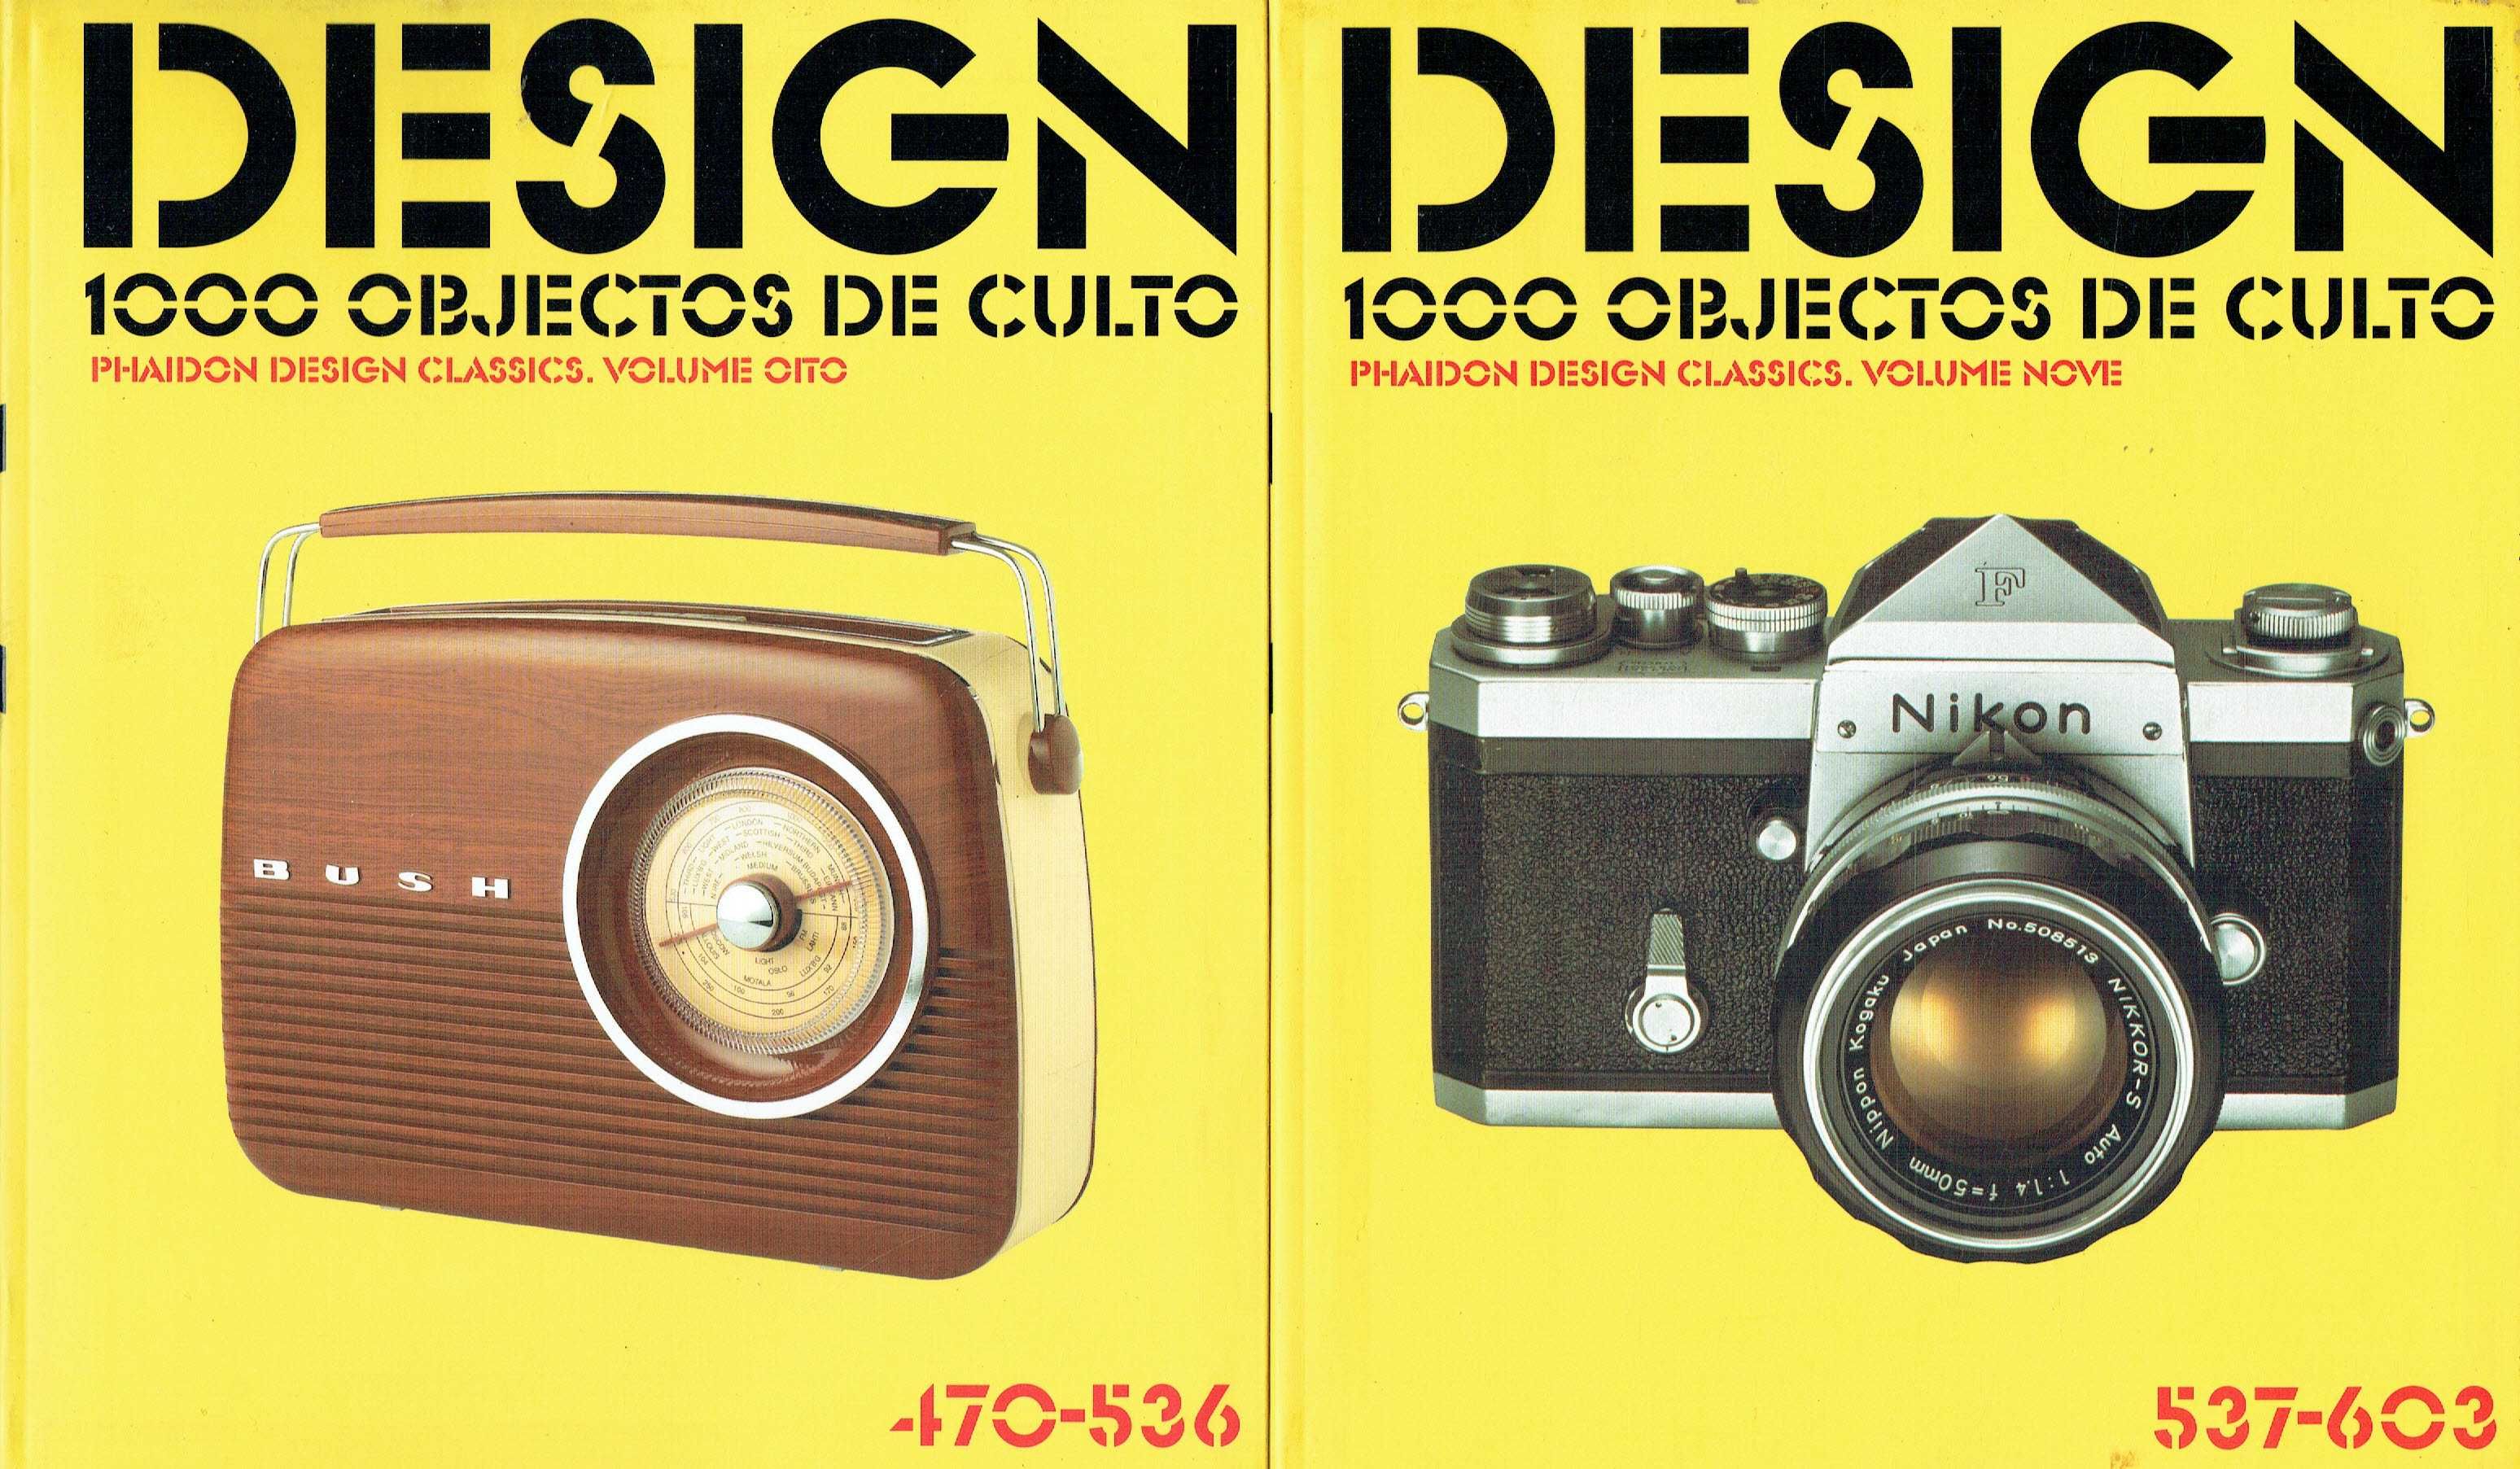 12342

Design - 1000 Objectos de Culto - 15 Volumes